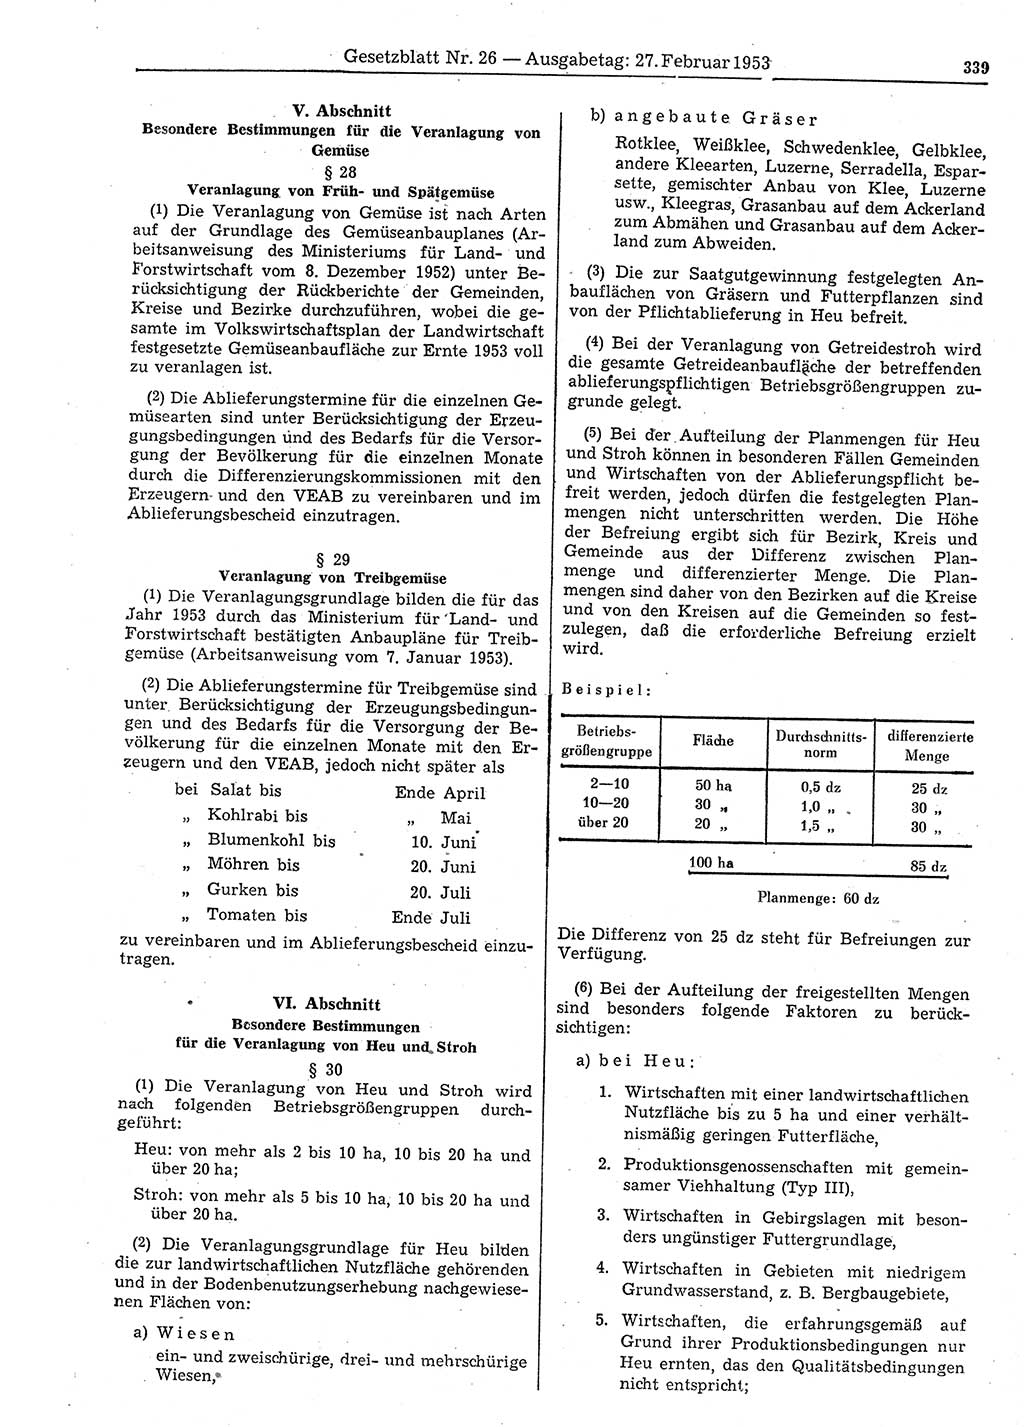 Gesetzblatt (GBl.) der Deutschen Demokratischen Republik (DDR) 1953, Seite 339 (GBl. DDR 1953, S. 339)